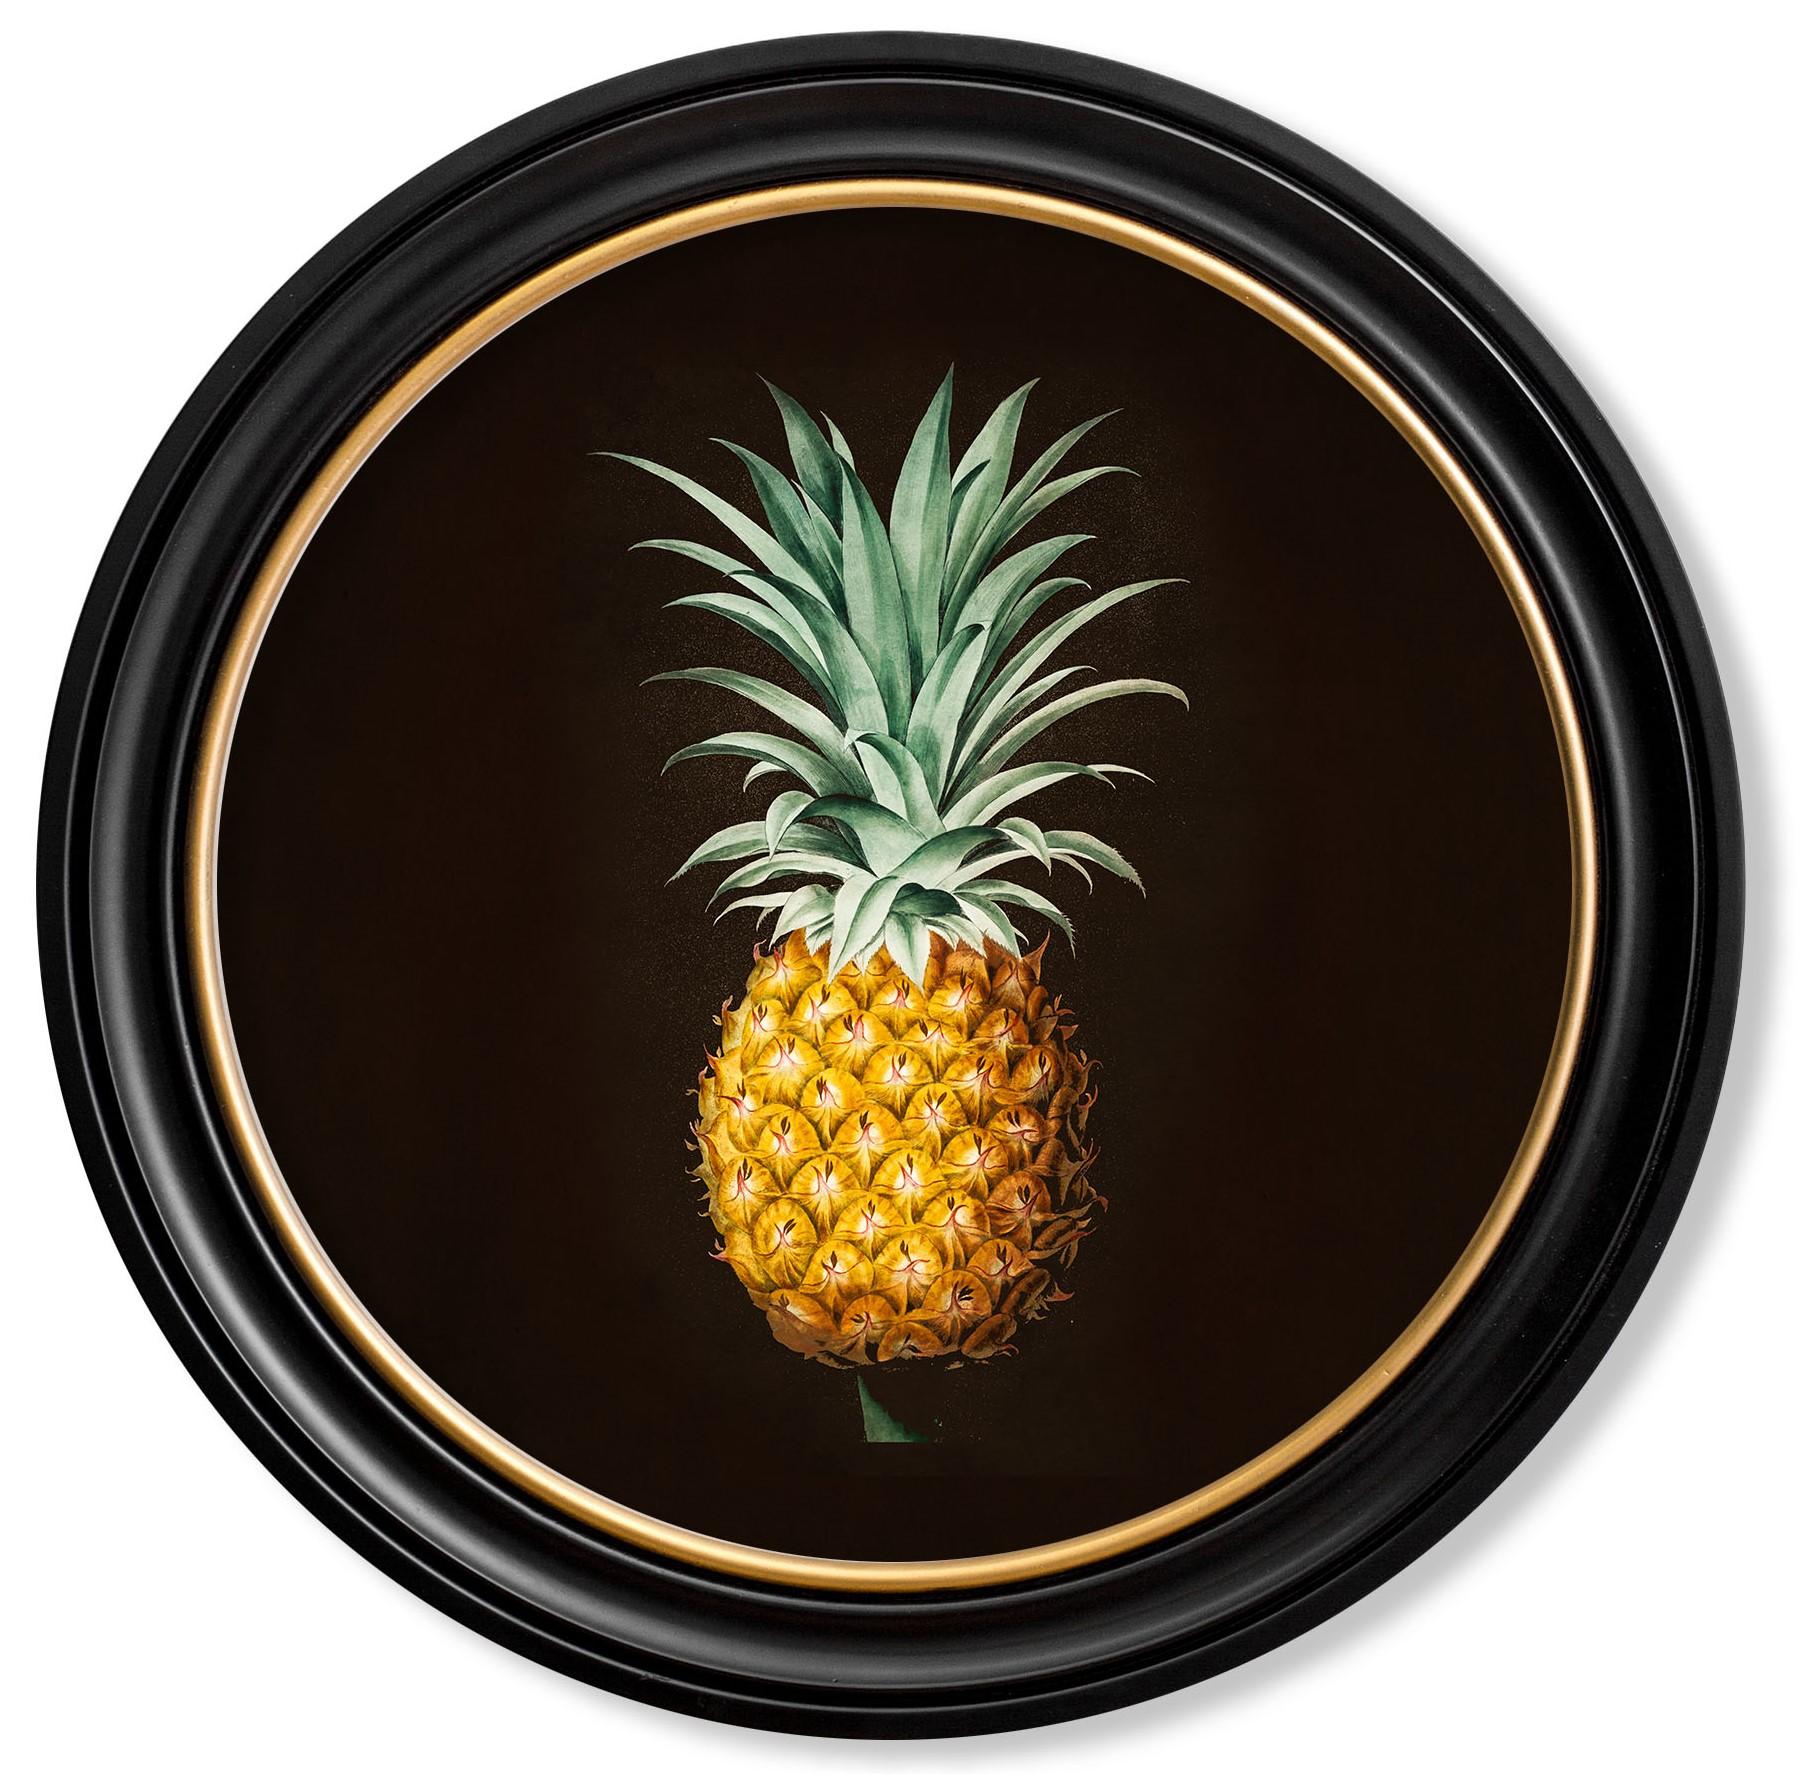 Dies ist eine reizvolle Runde gerahmt Druck einer Ananas Studie ursprünglich von einer Hand koloriert frühen 19. Jahrhundert Französisch botanischen Illustration.

Drucke dieses Stils wurden ursprünglich in Schwarz-Weiß gedruckt und dann von Hand